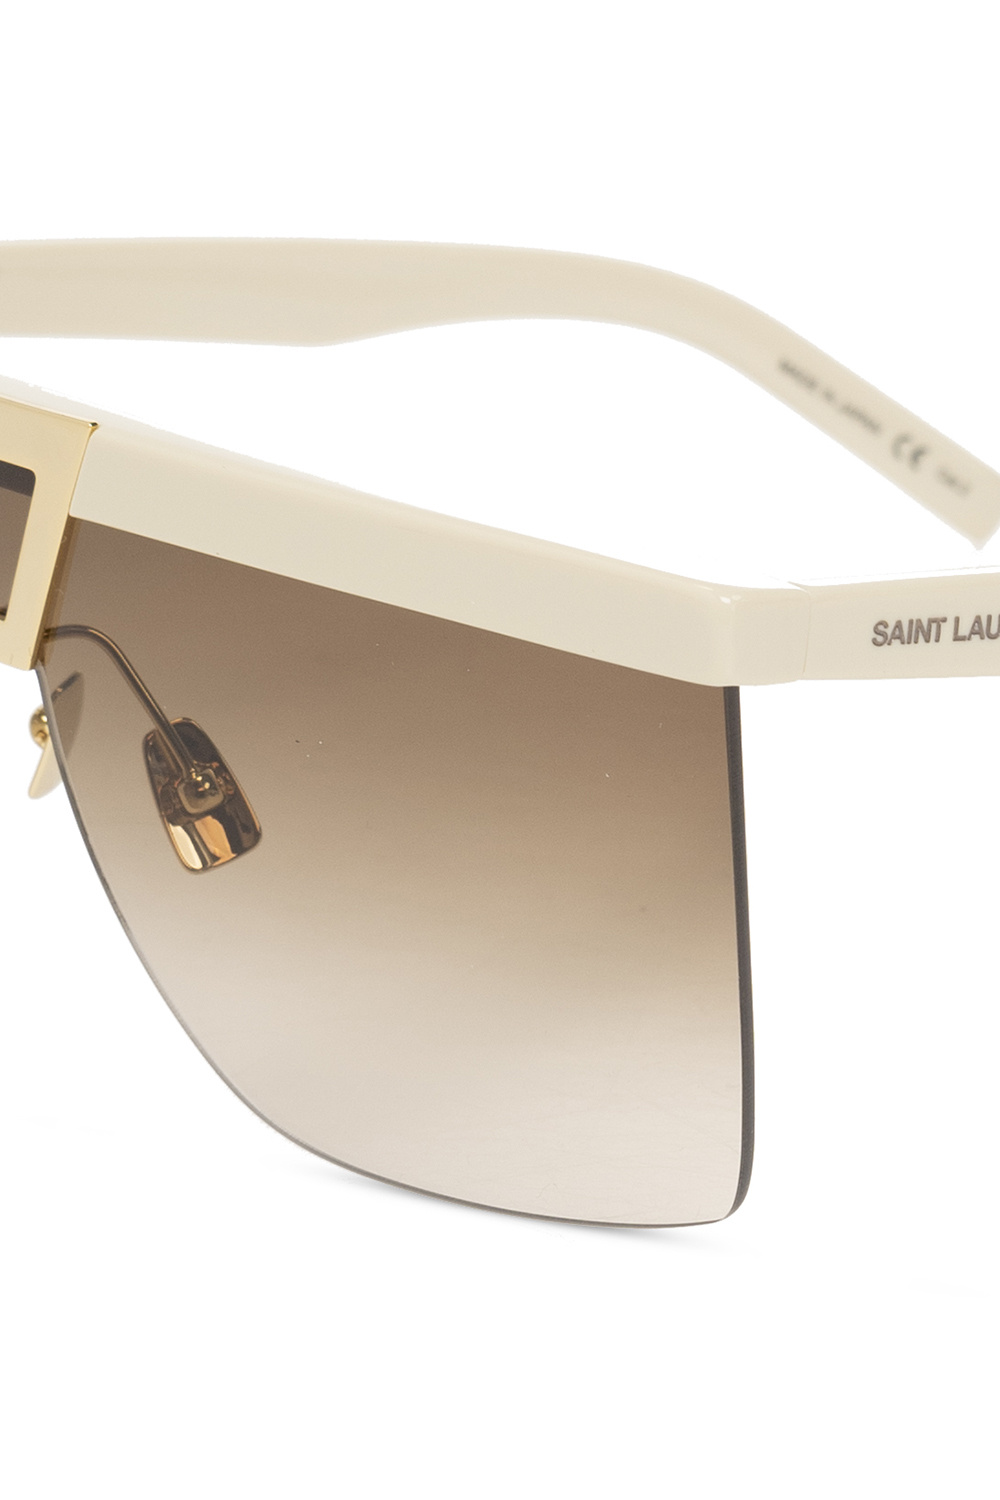 Saint Laurent ‘SL 537 Palace’ sunglasses